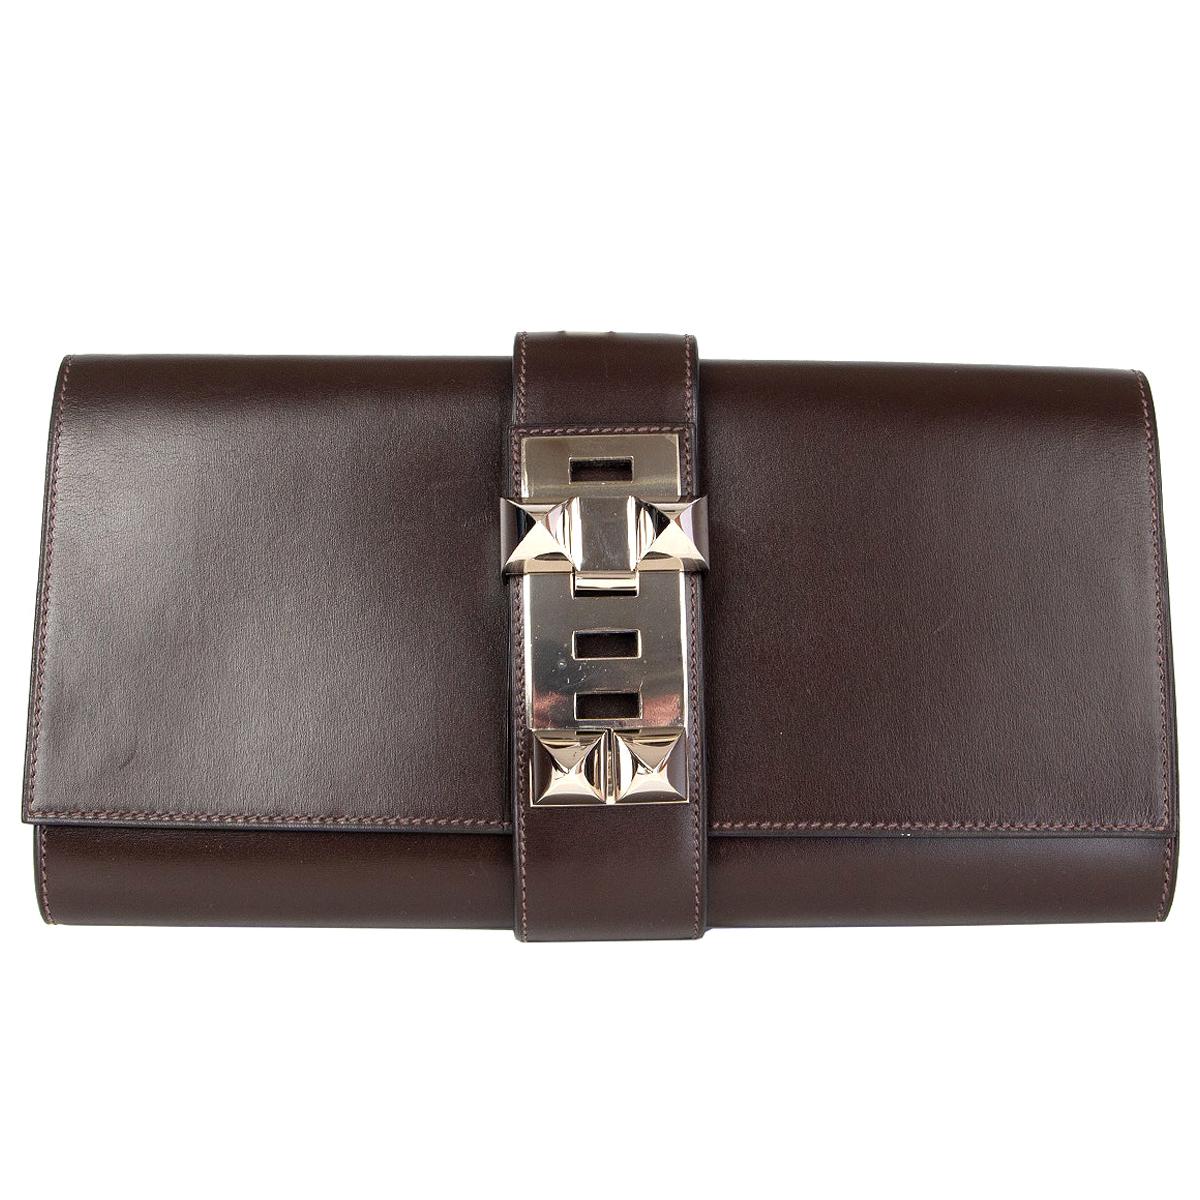 HERMES Marron Fonce brown Box leather MEDOR 29 Clutch Bag